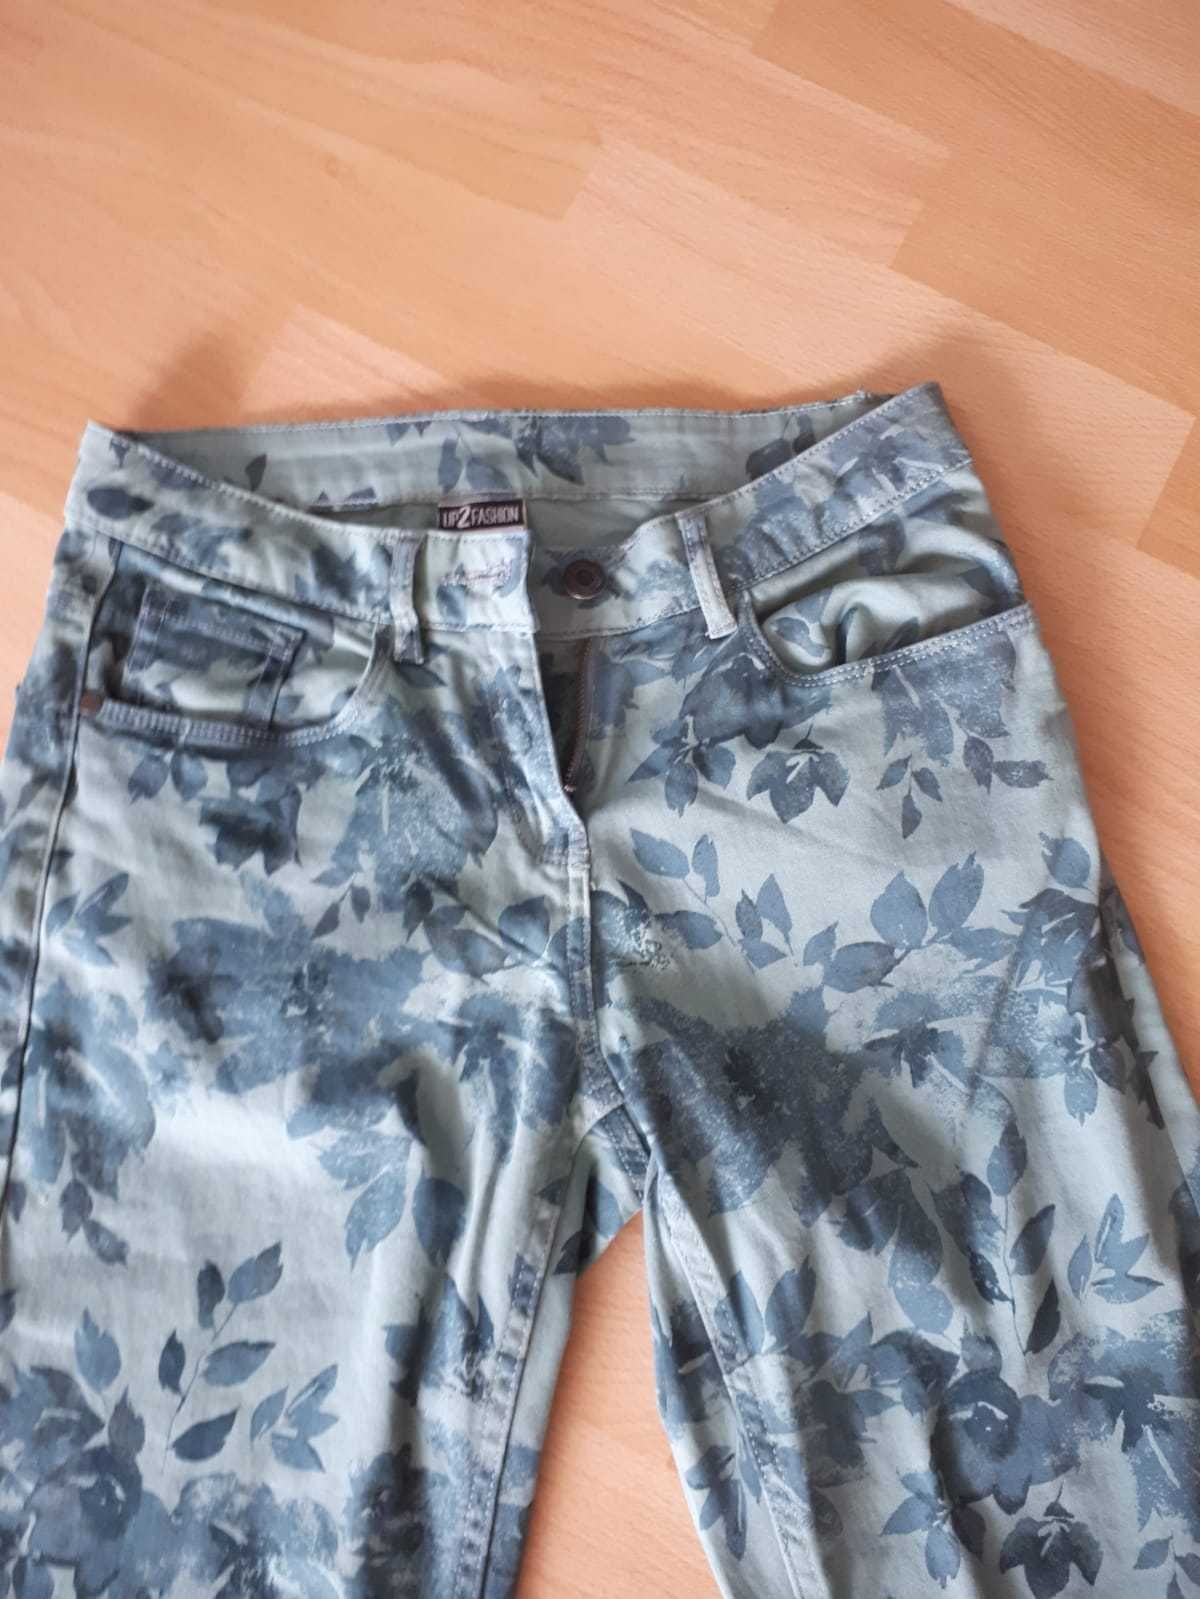 Spodnie damskie jeans,kwiaty,rozmiar36,nowe